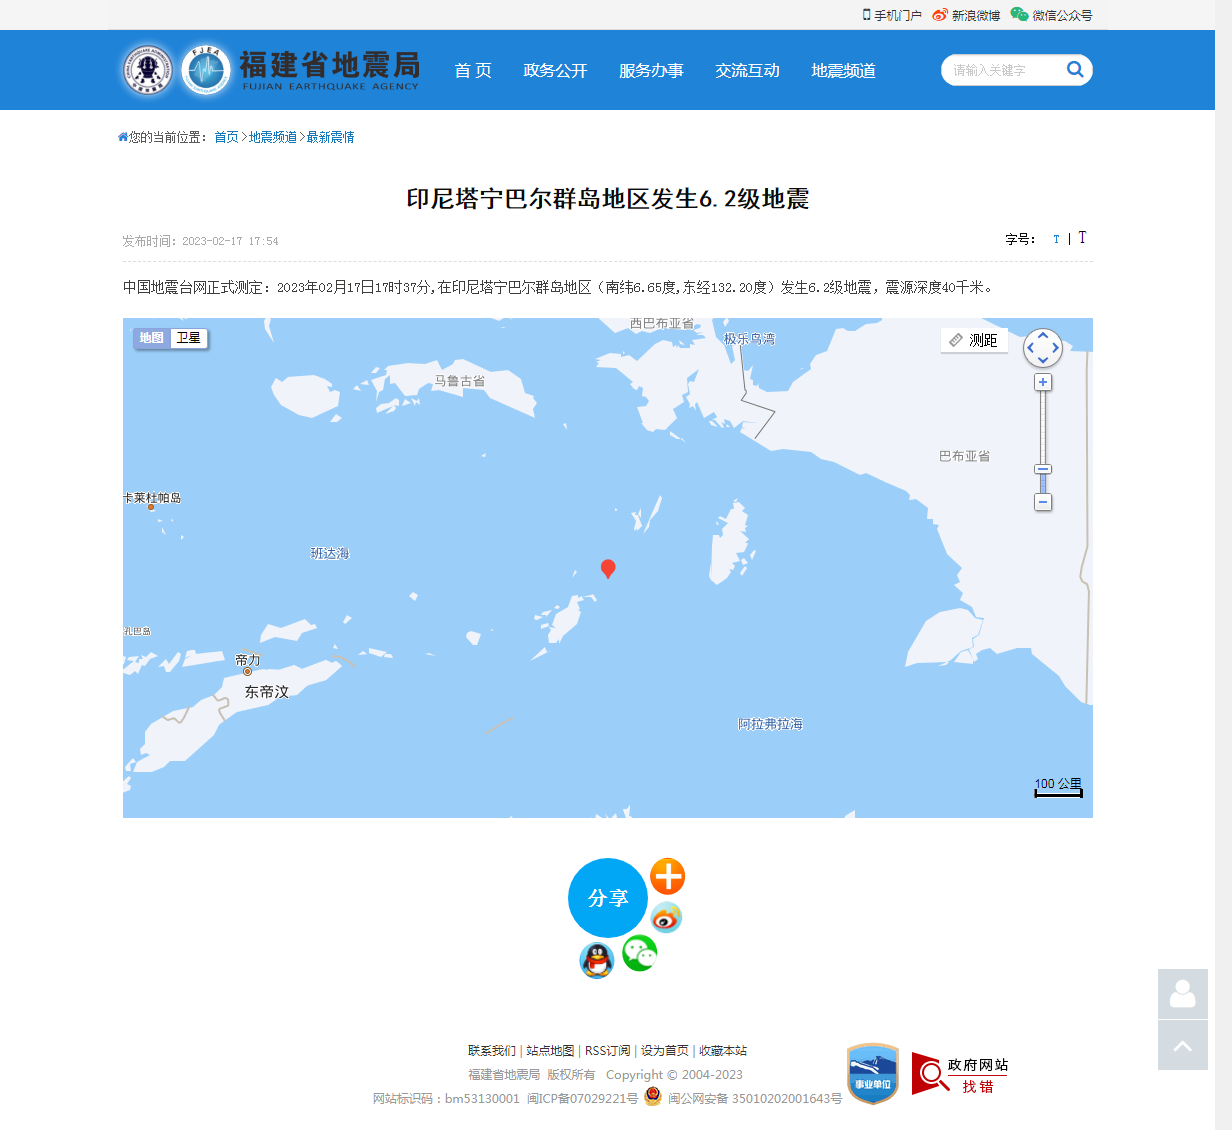 印尼塔宁巴尔群岛地区发生6.2级地震_福建省地震局.png